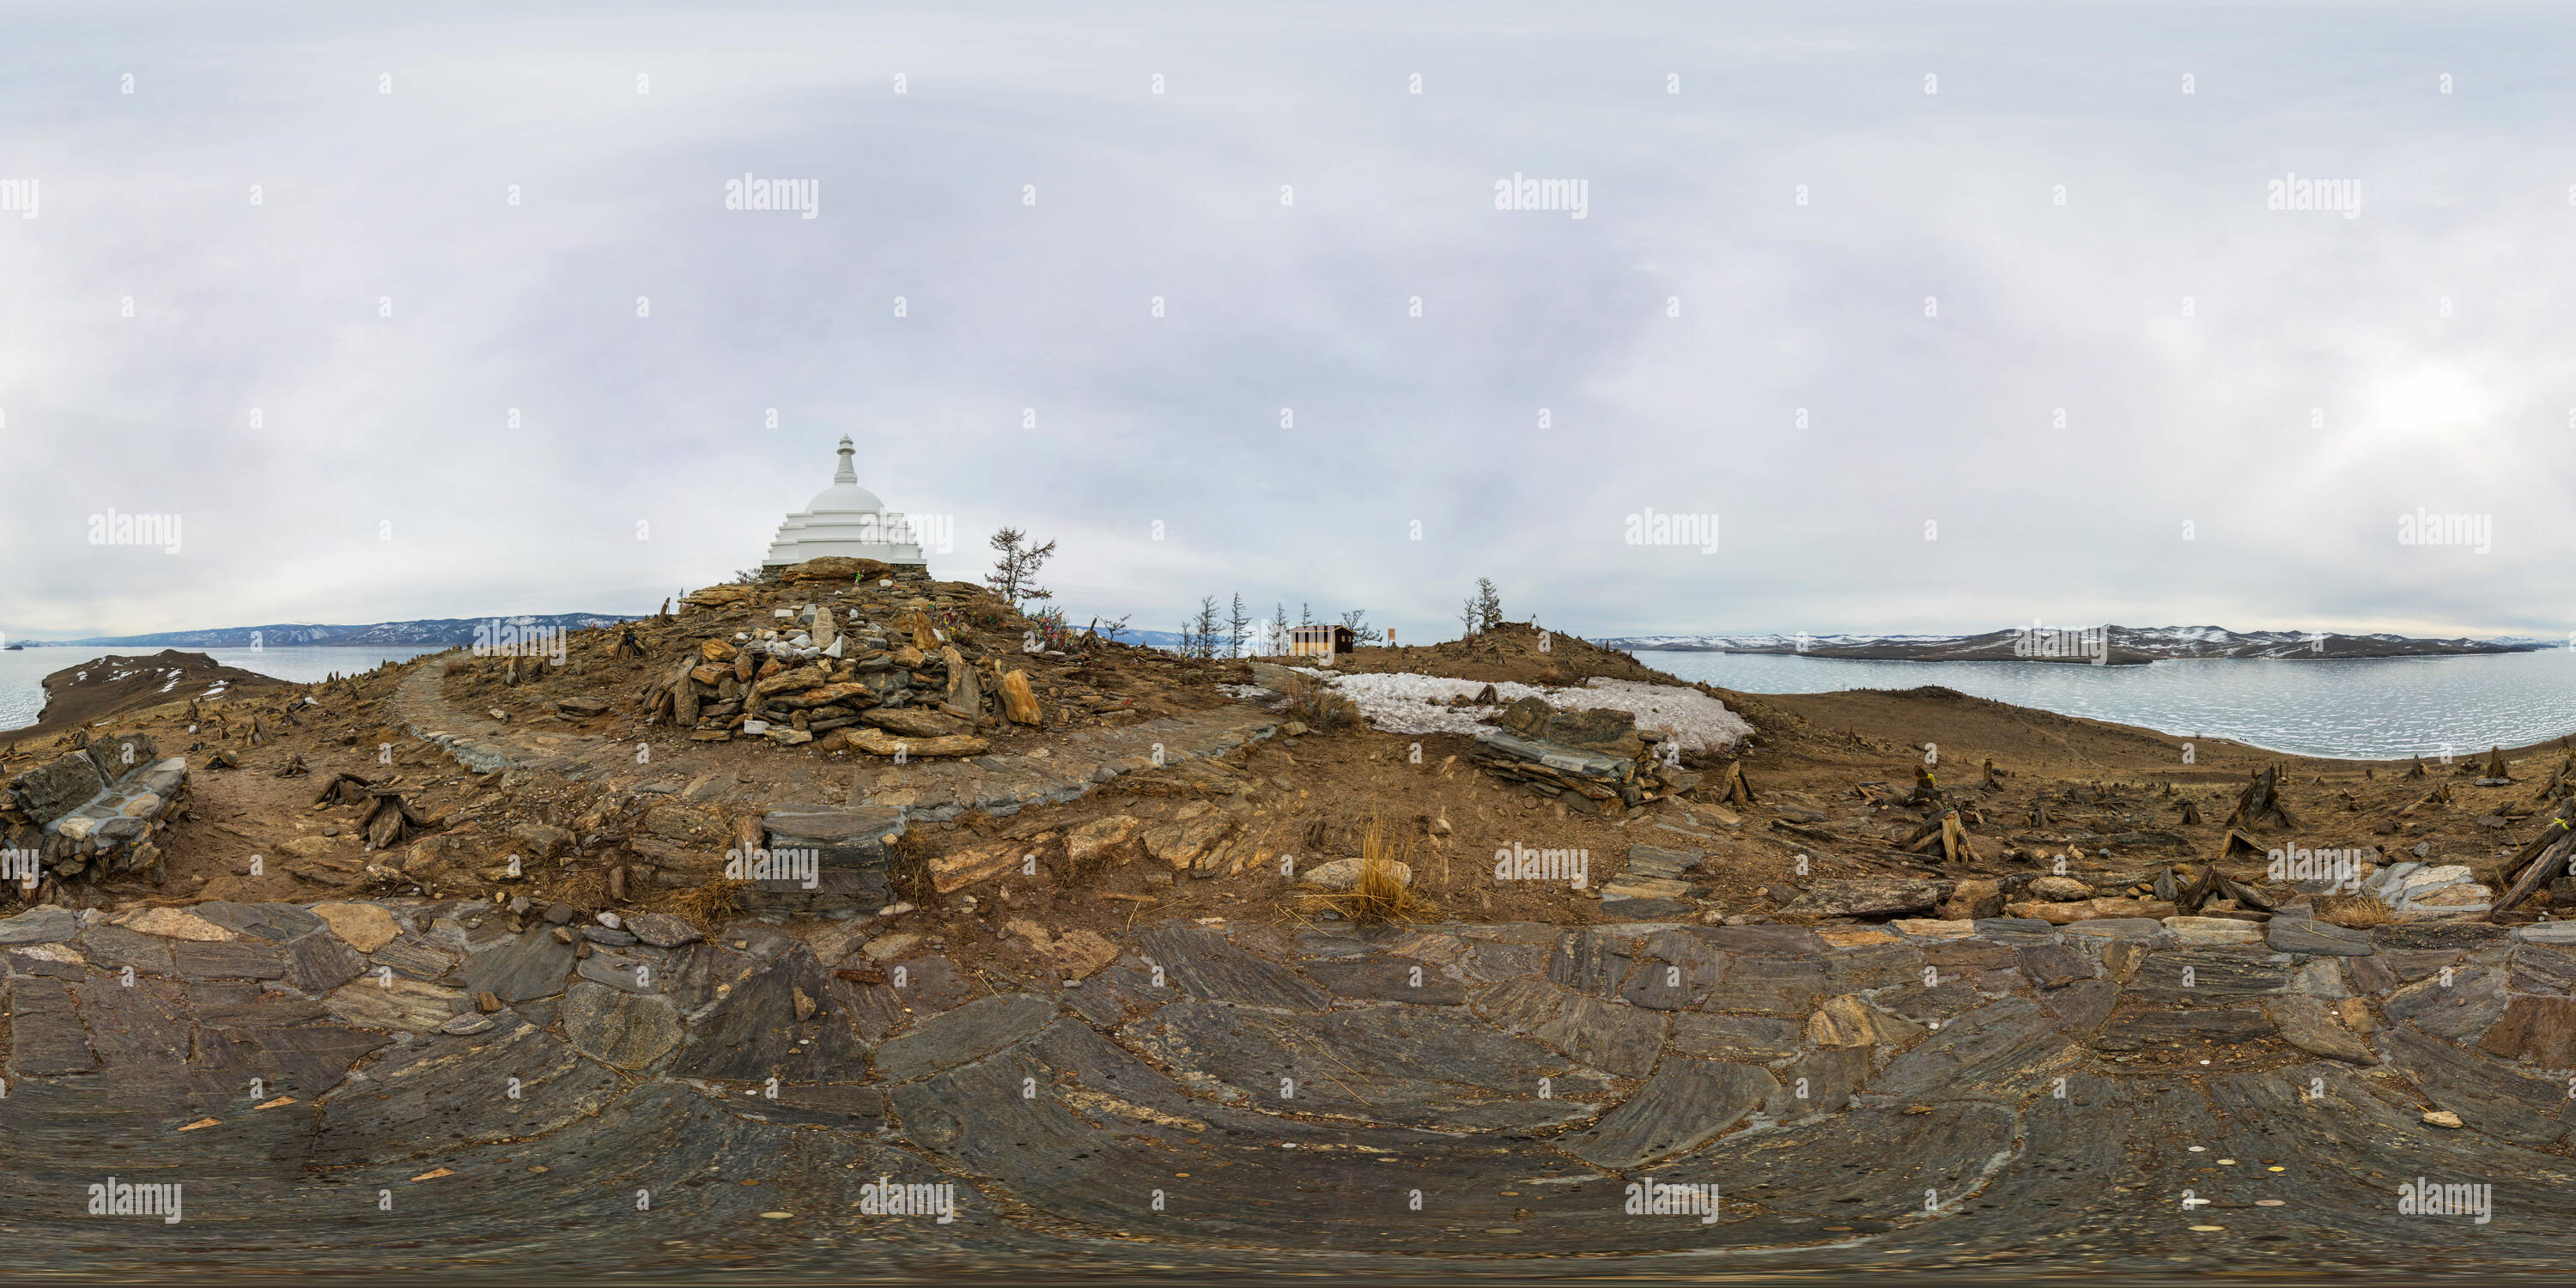 Visualizzazione panoramica a 360 gradi di Panorama sferica 360 gradi 180 stupa buddisti di illuminismo Ogoy su di un isola del lago Baikal. vr contenuto.